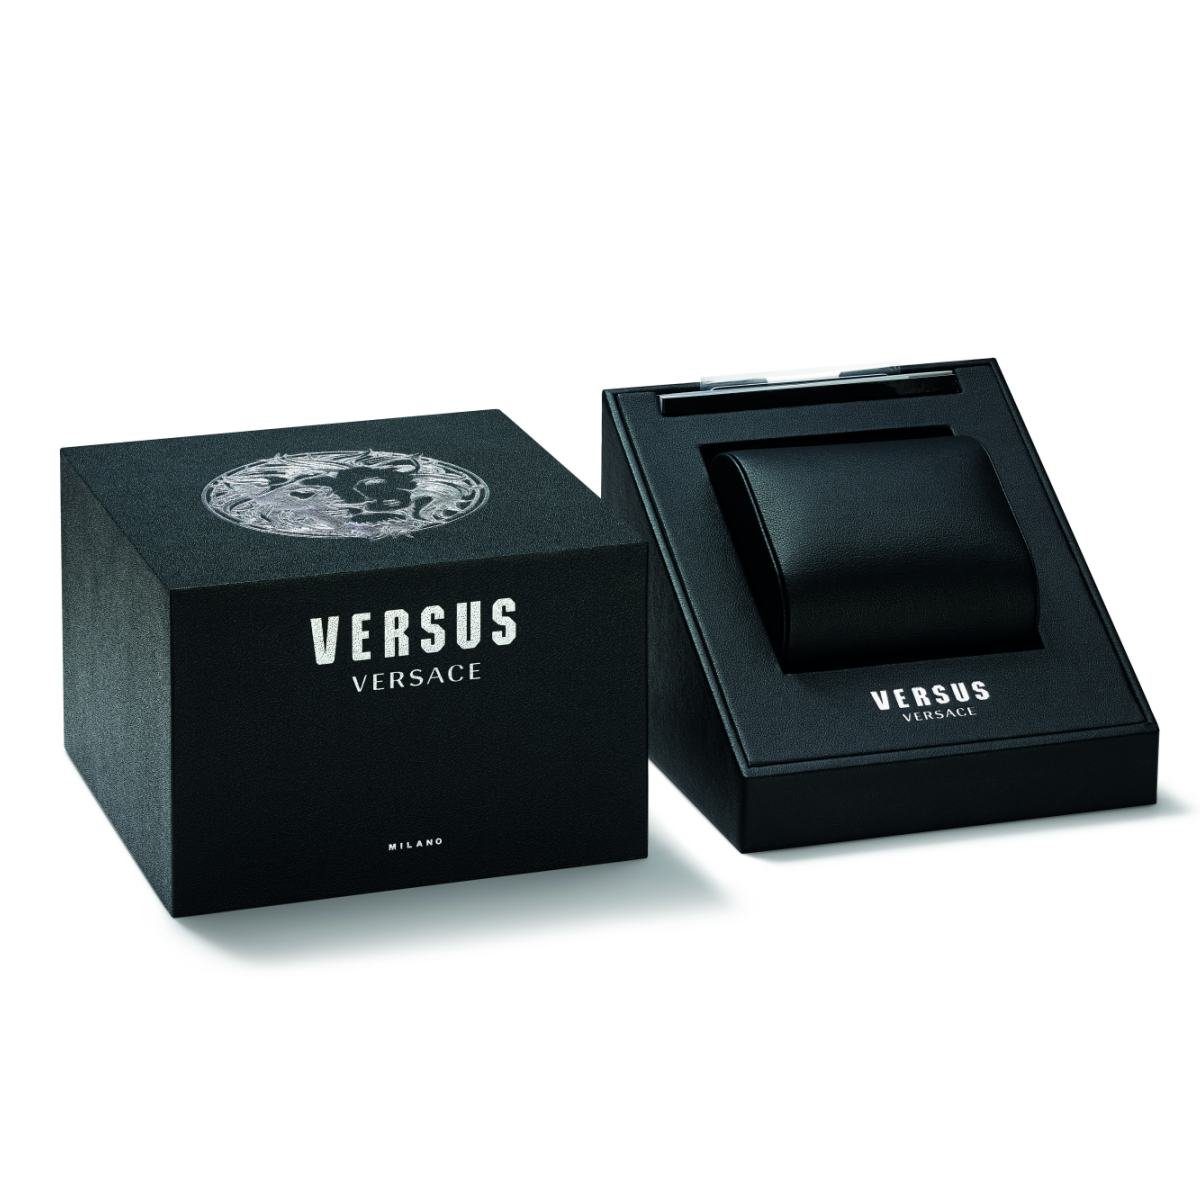 VSP572021 Versace Versus Quarzuhr